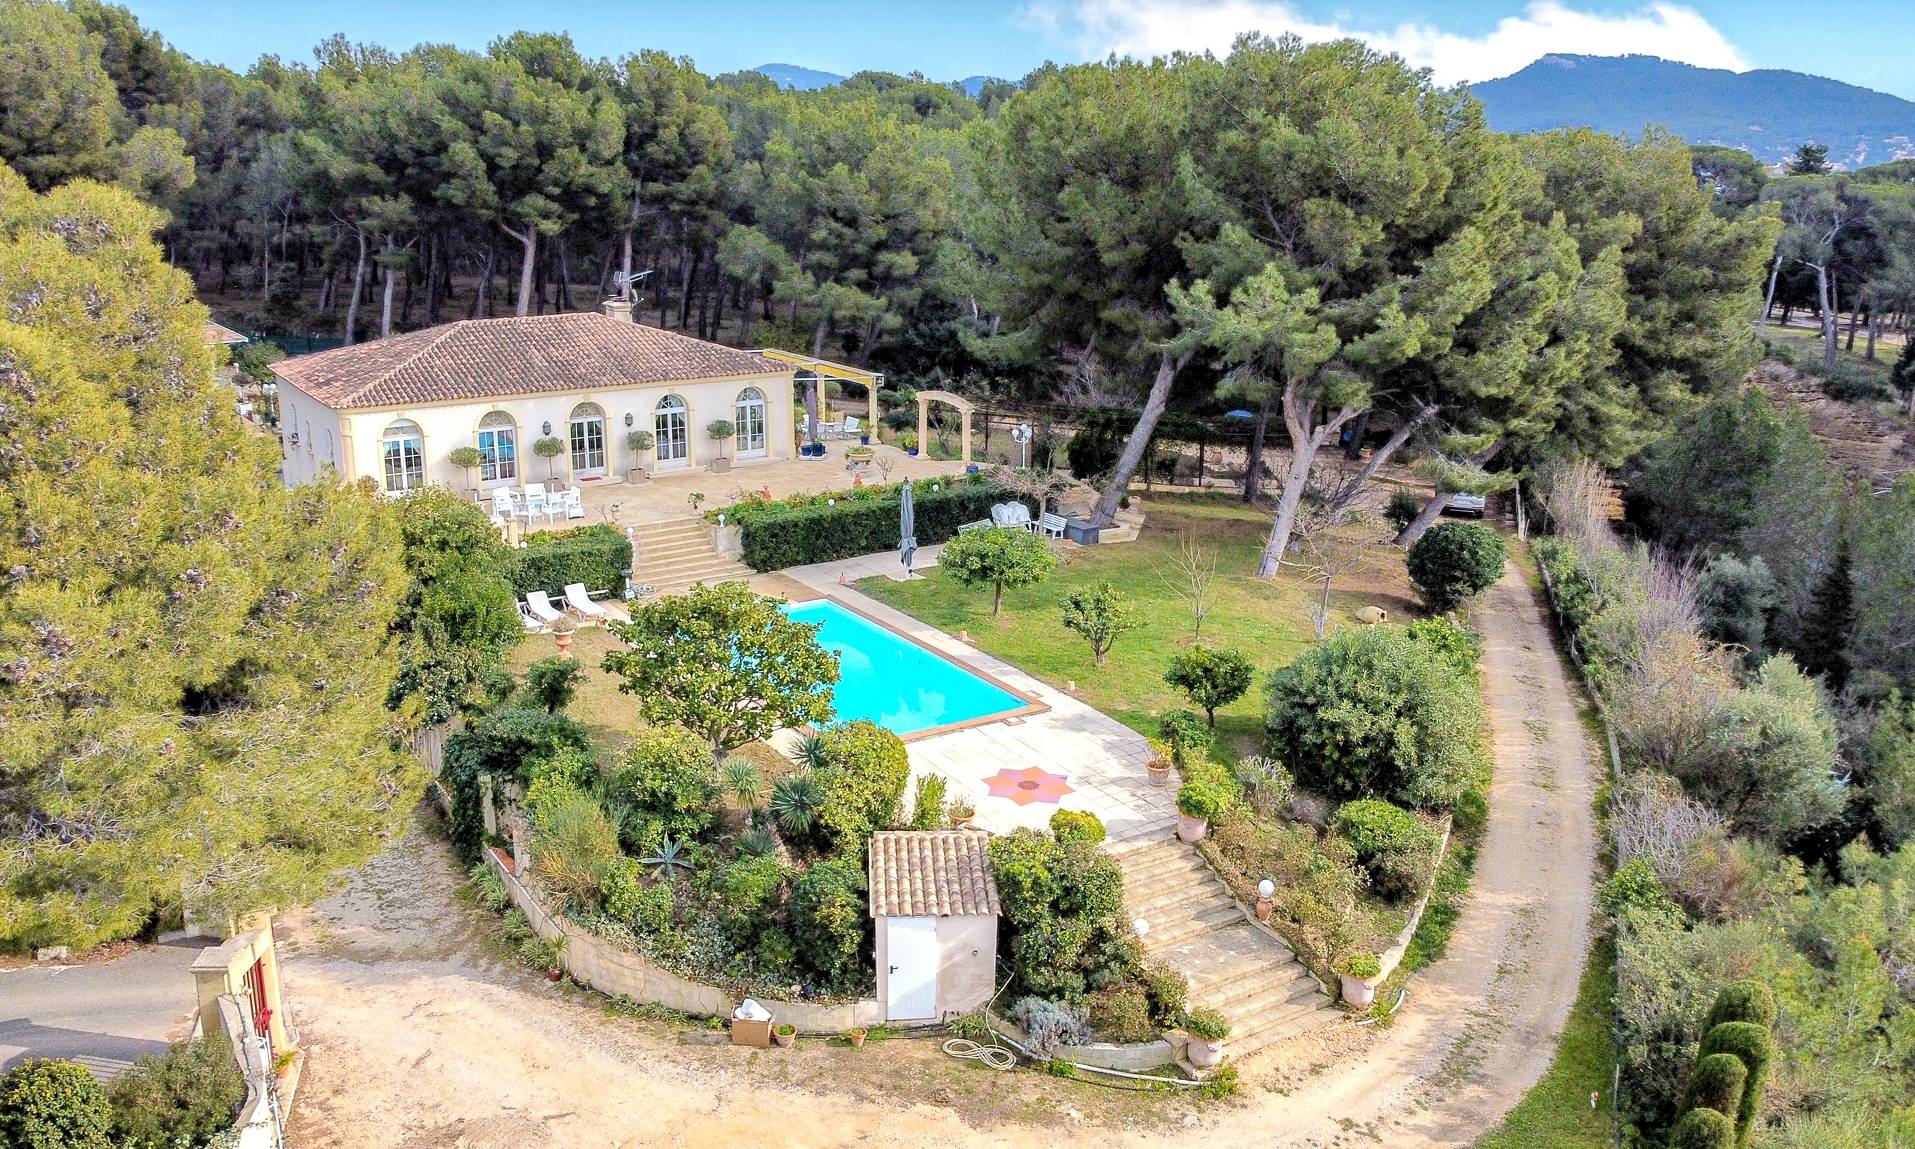 Palazzo villa à l'italienne à vendre sur la Côte d'Azur